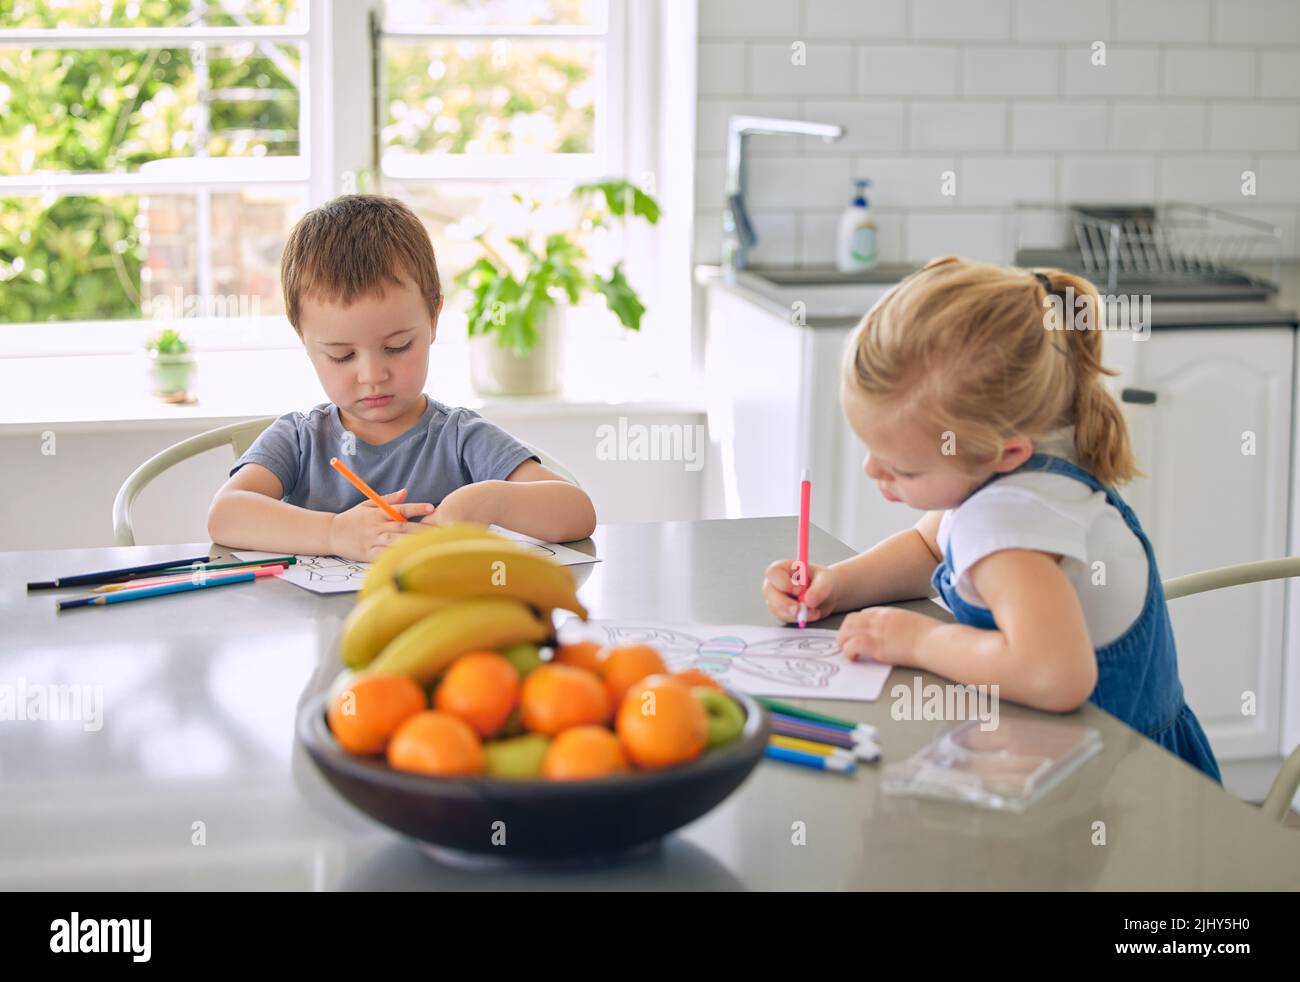 Kaukasische Geschwister zeichnen zusammen Bilder. Bruder und Schwester machen Hausaufgaben. Kinder färben in Skizzen in ihrer Küche. Kleines Mädchen Zeichnung Stockfoto